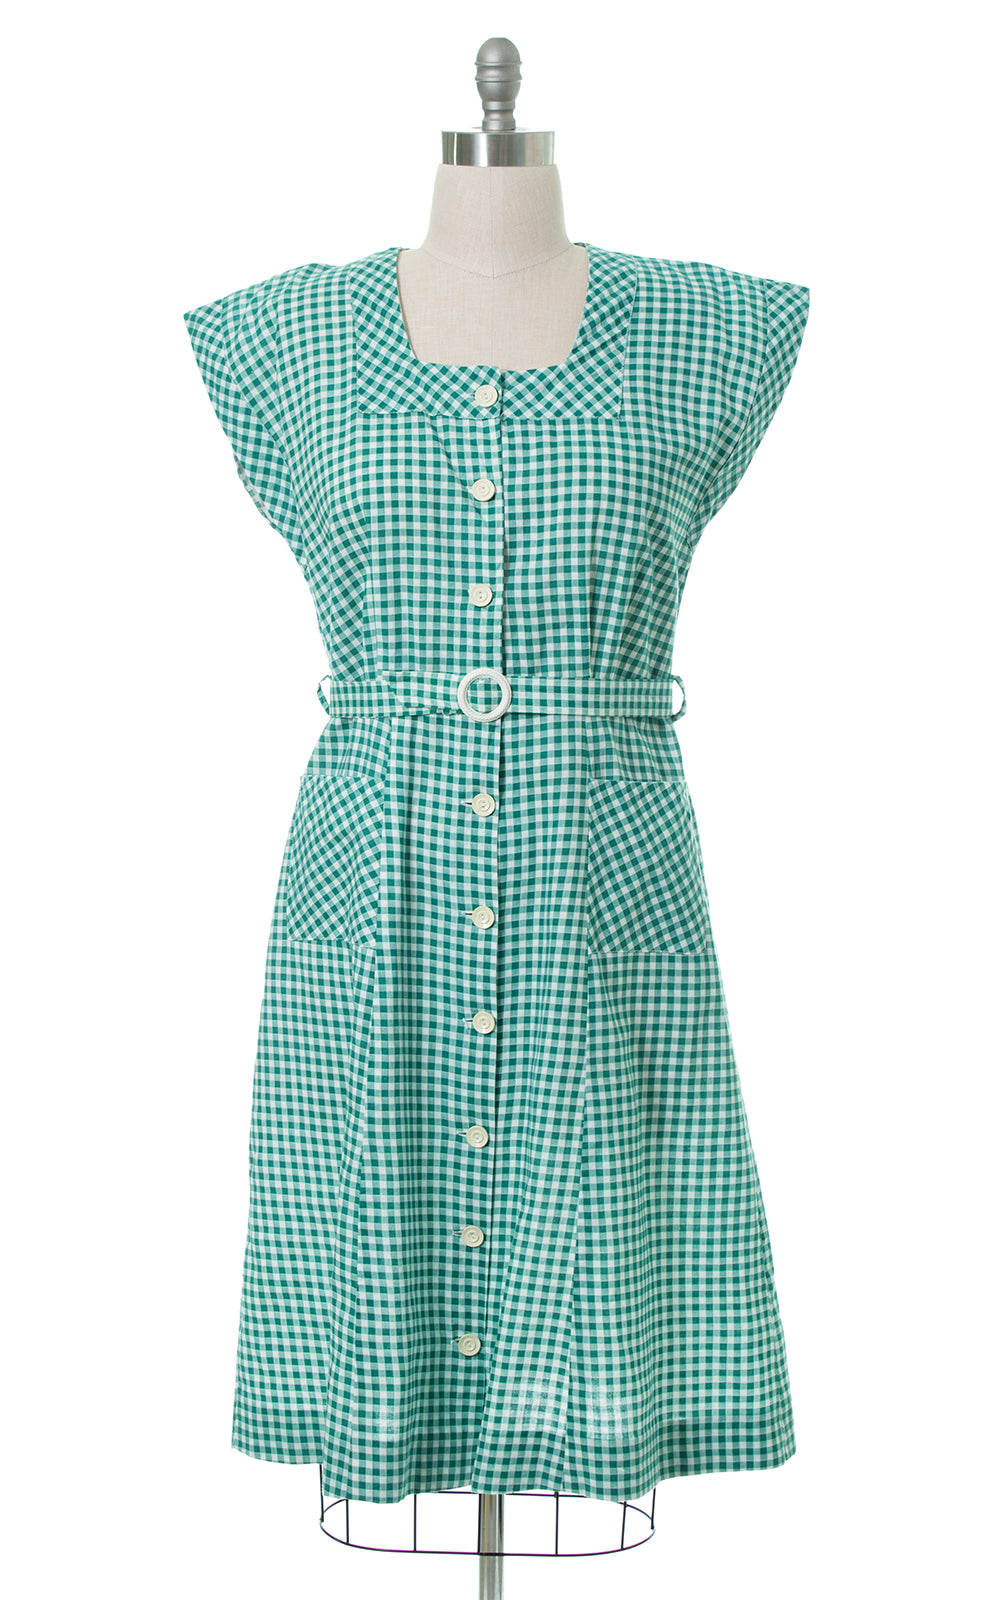 1940s Green Gingham Shirtwaist Dress with Pockets